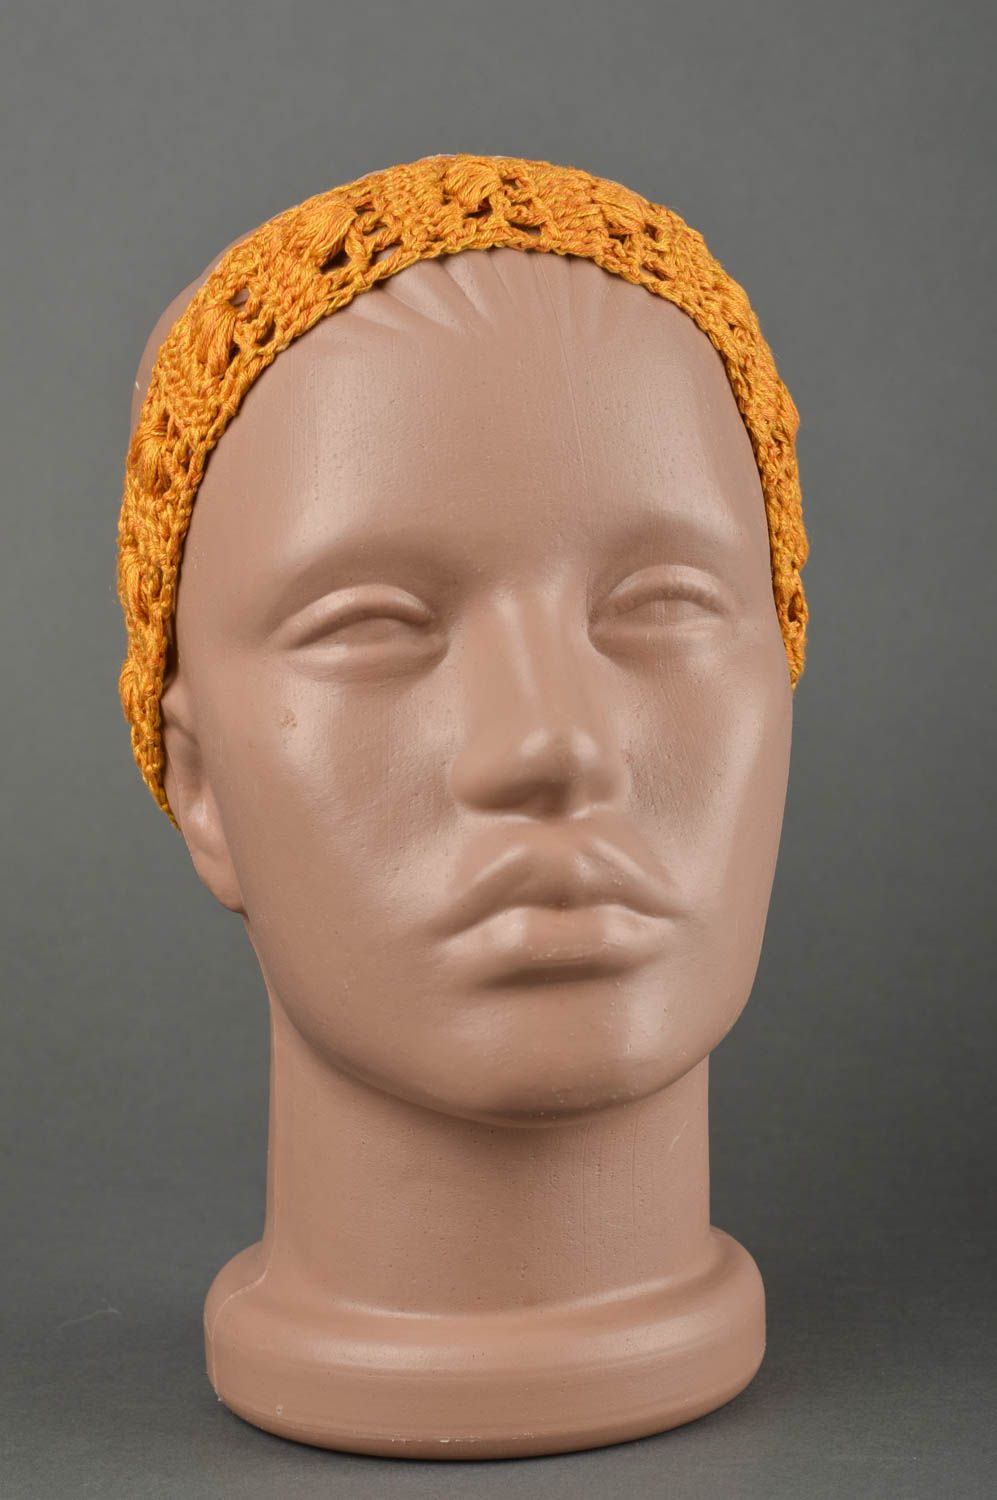 Повязка на голову ручной работы повязка для девочки детская повязка желтая фото 1